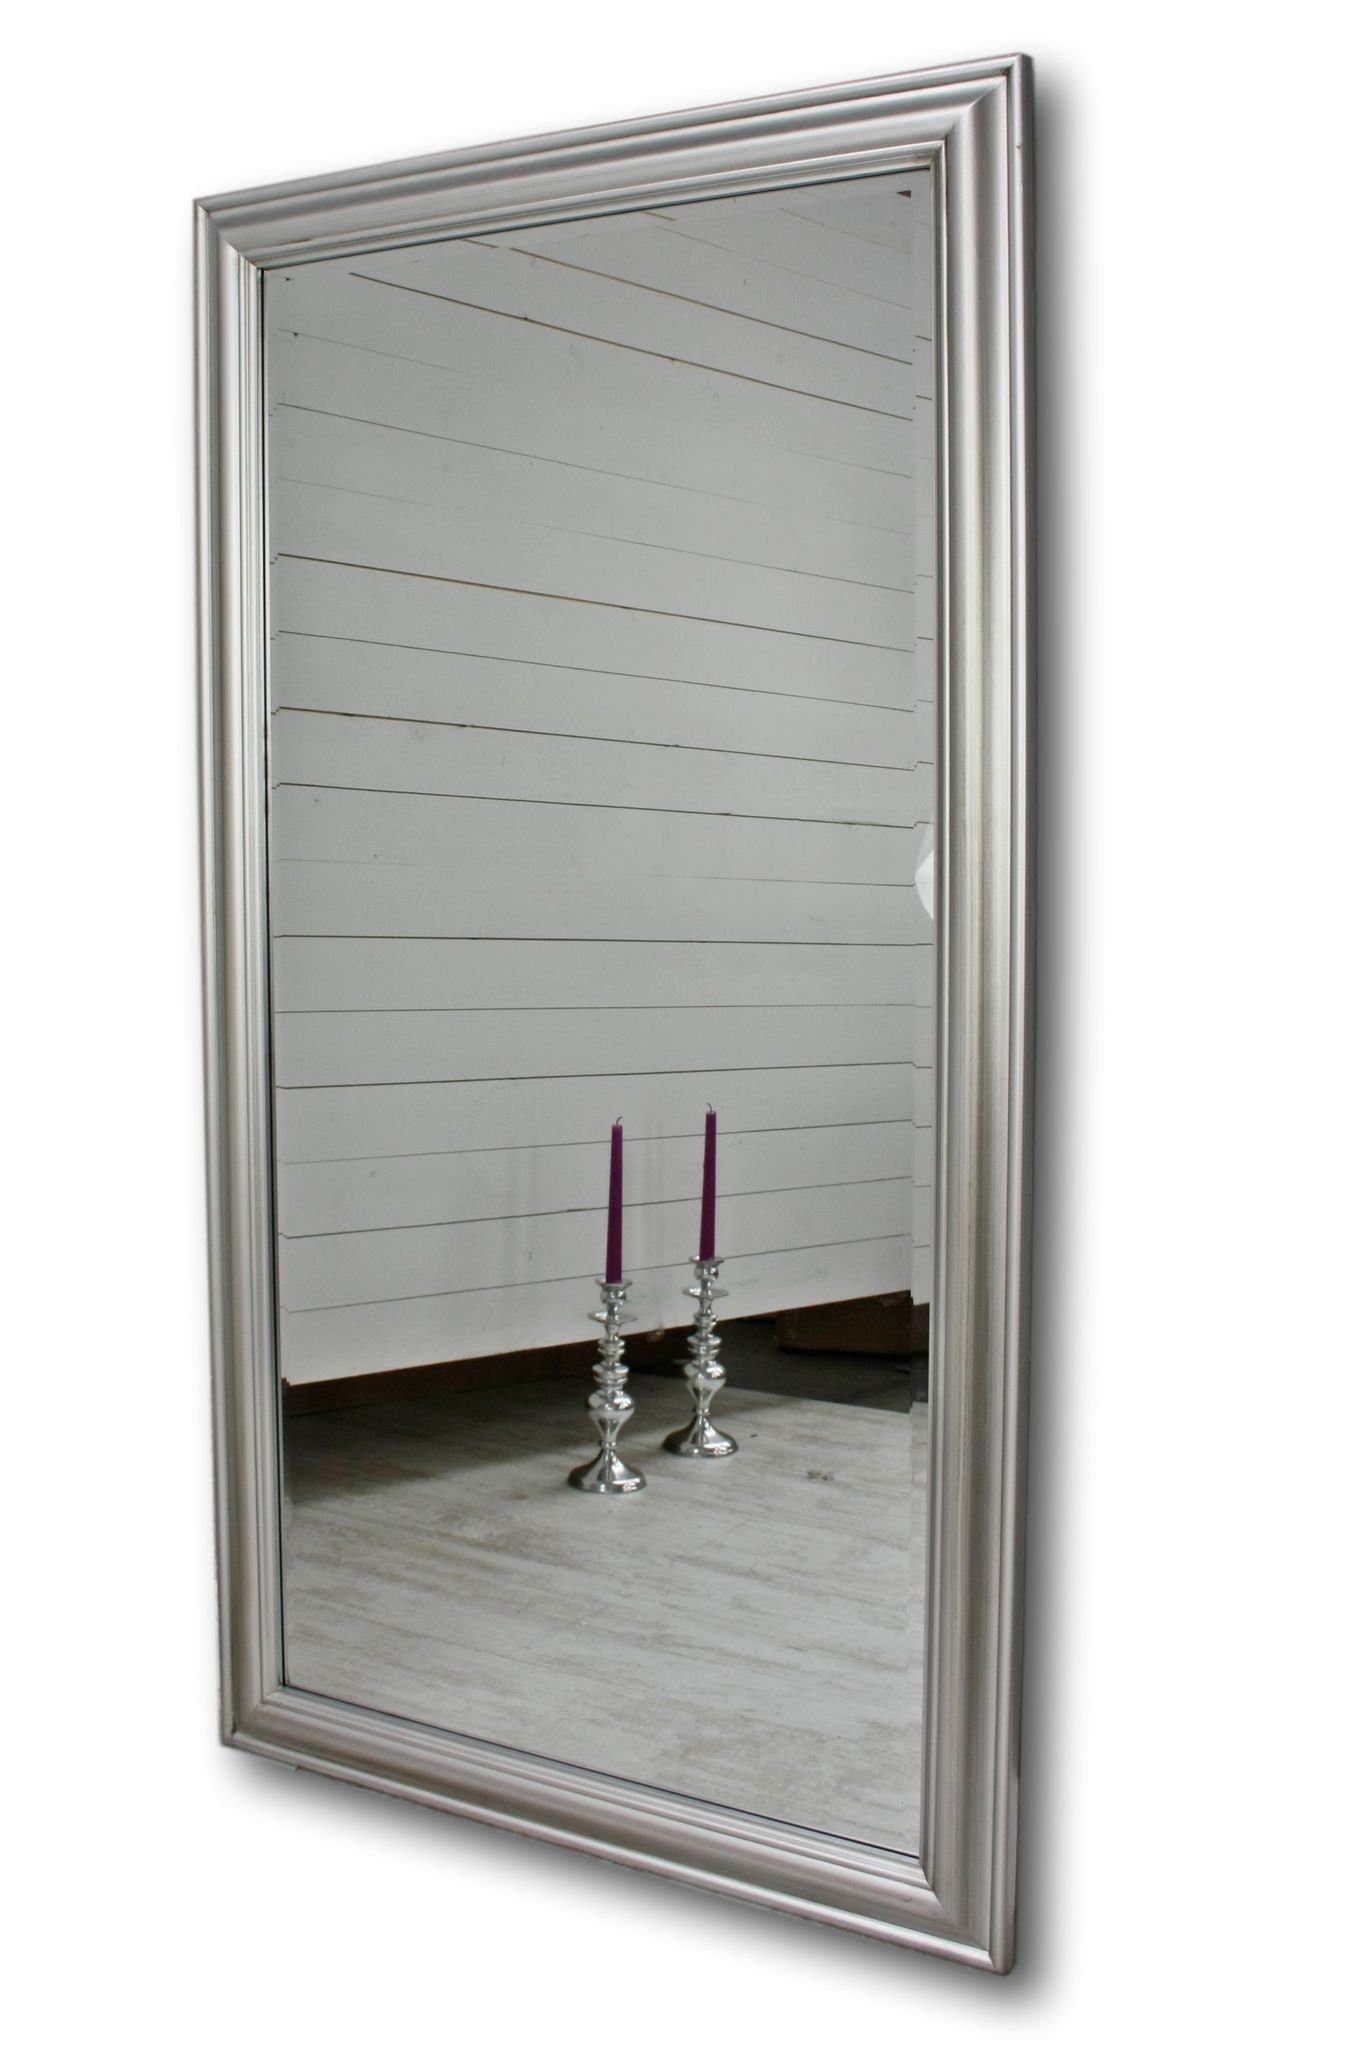 Badspiegel klassisches Spiegel: Spiegel 132x72x7 Badezimmerspiegel Wandspiegel schlicht Design elbmöbel 132x72x5cm, silber